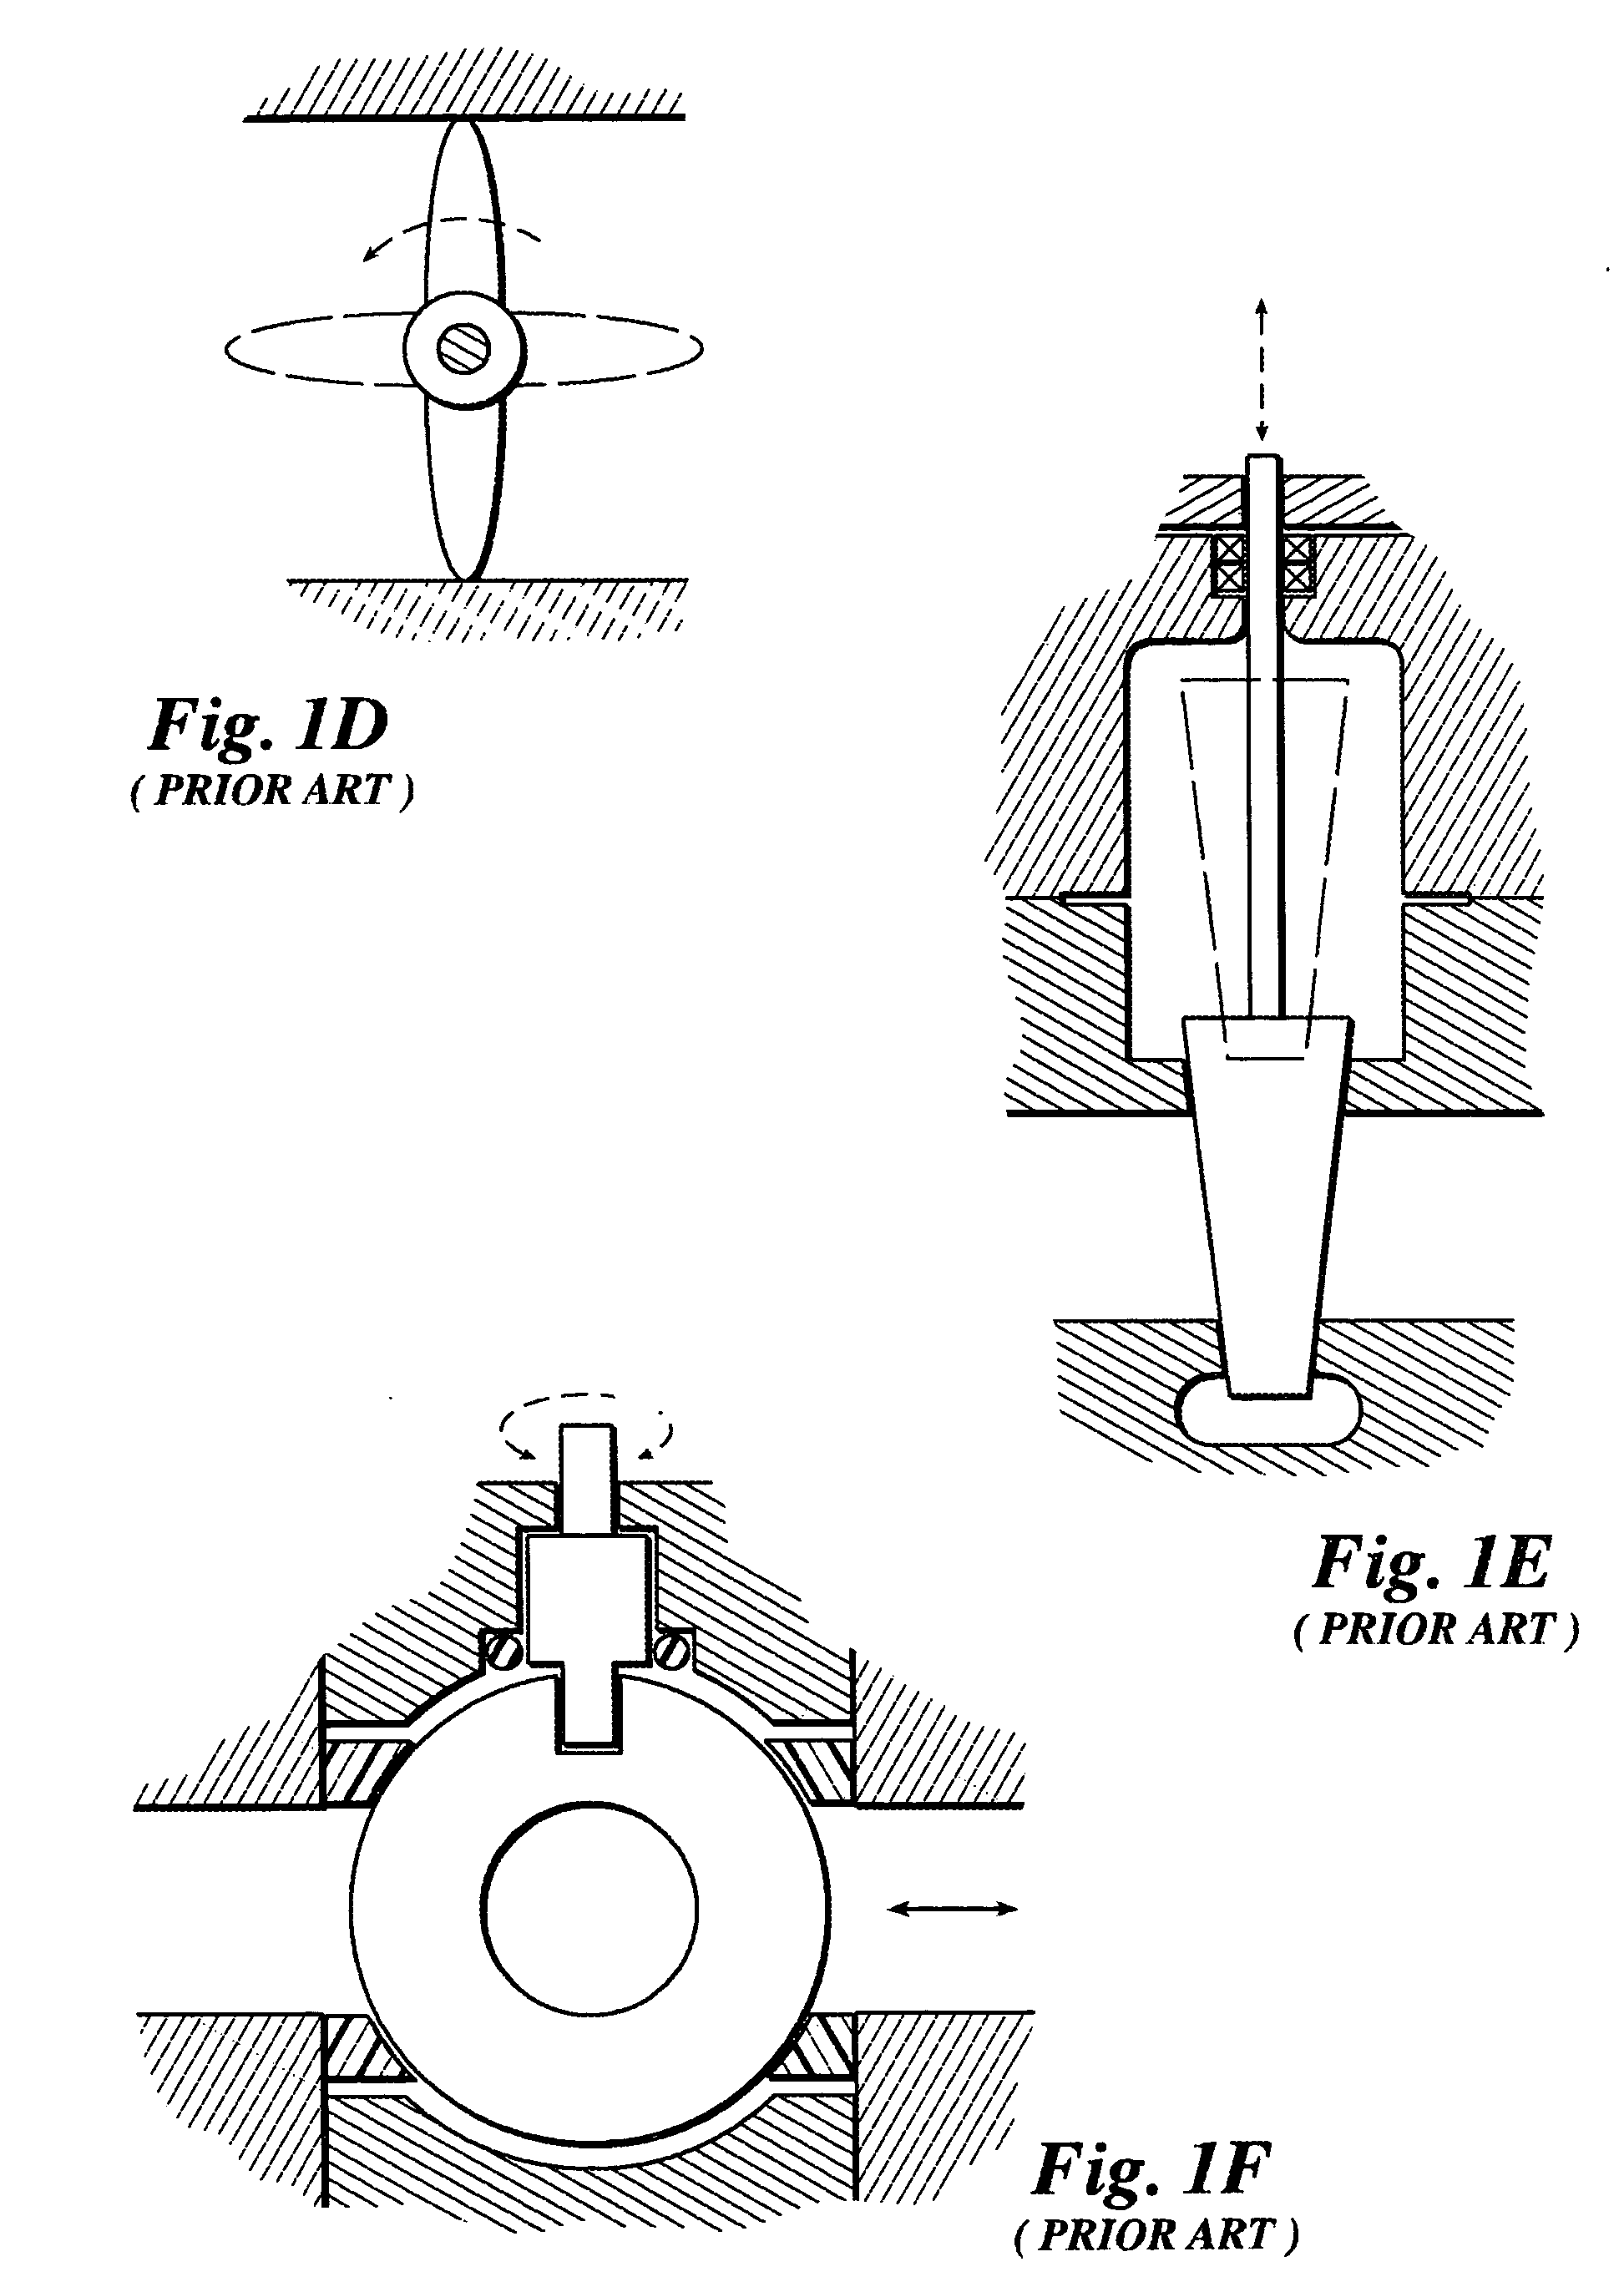 Split ball valve